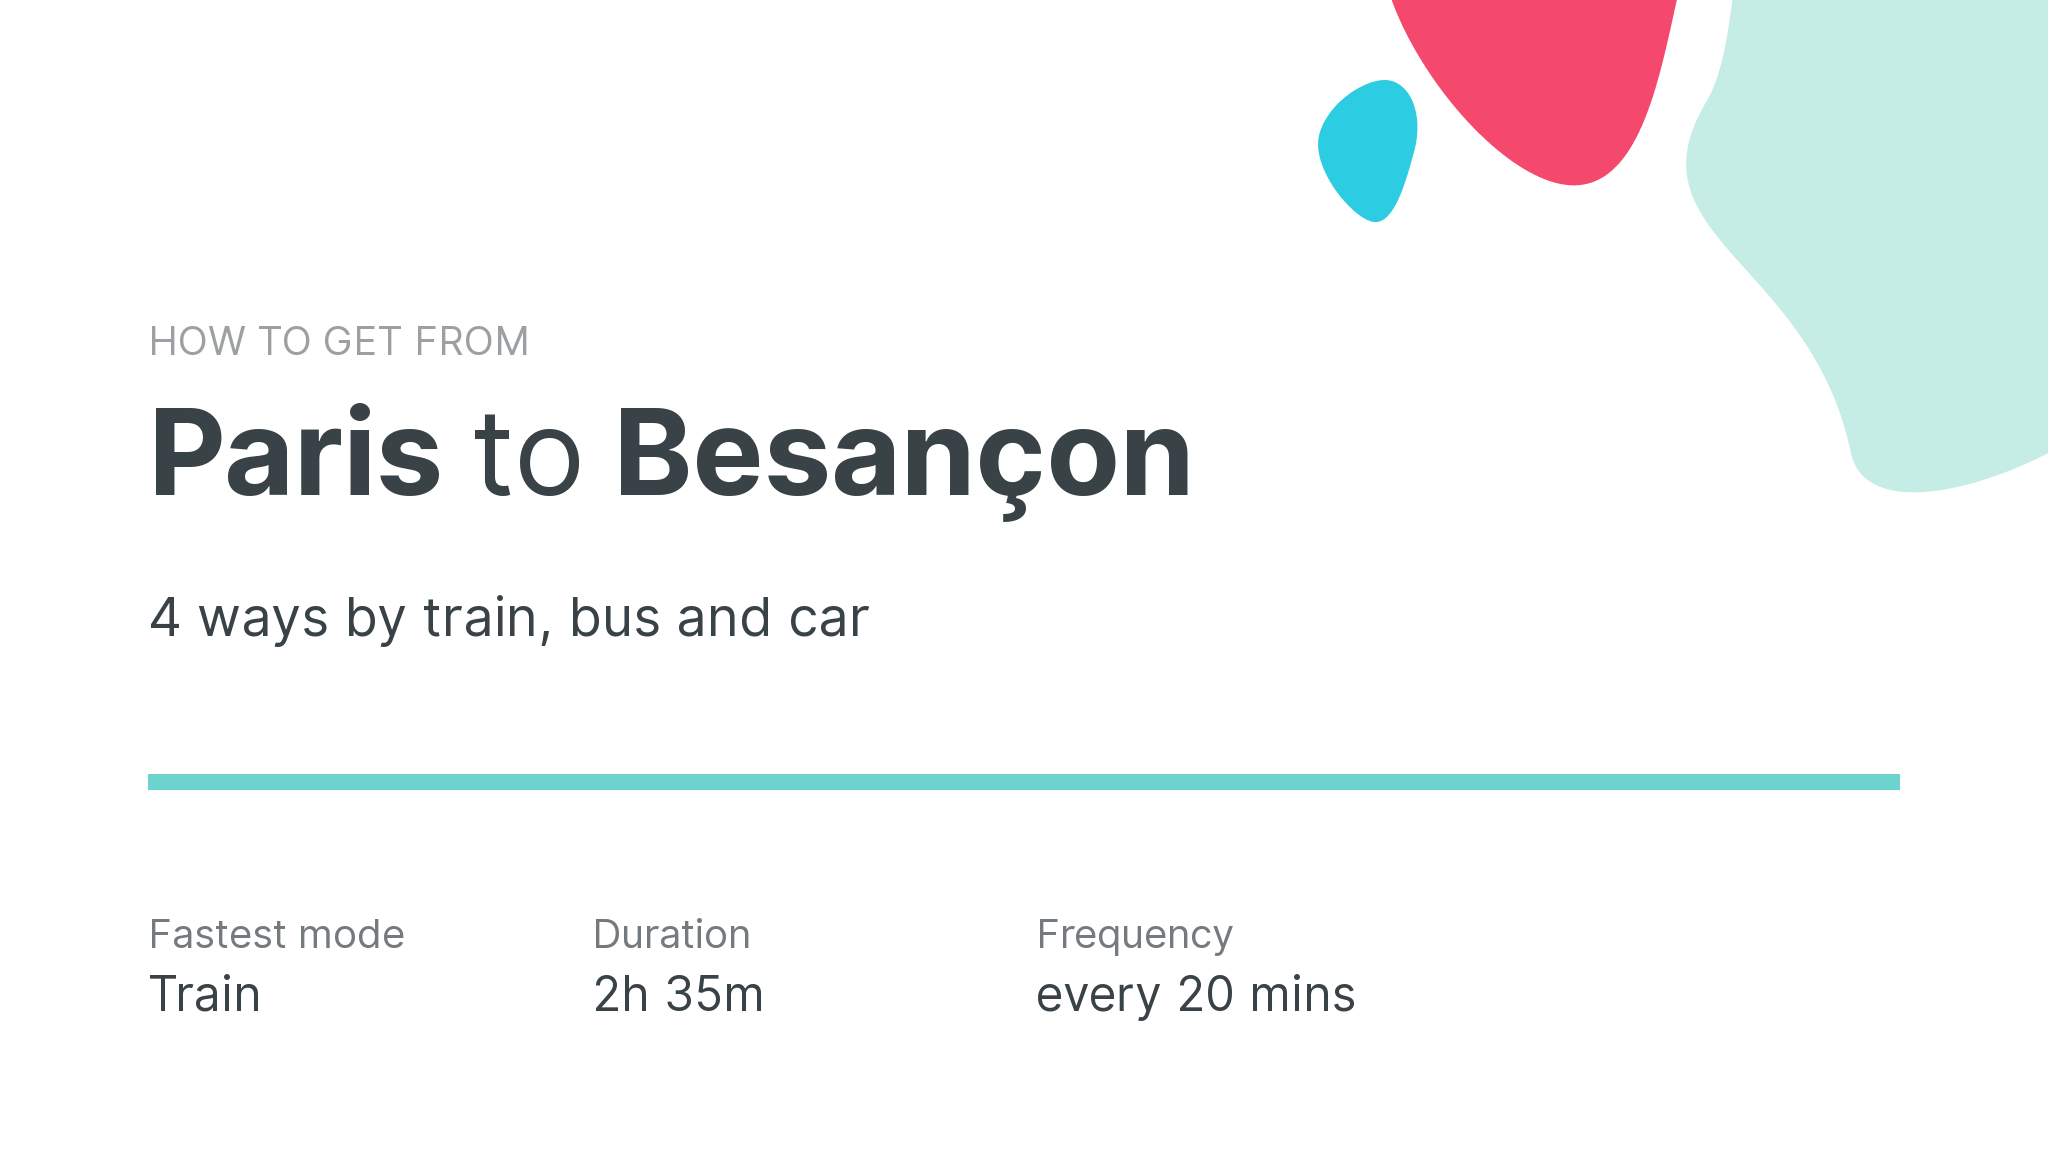 How do I get from Paris to Besançon